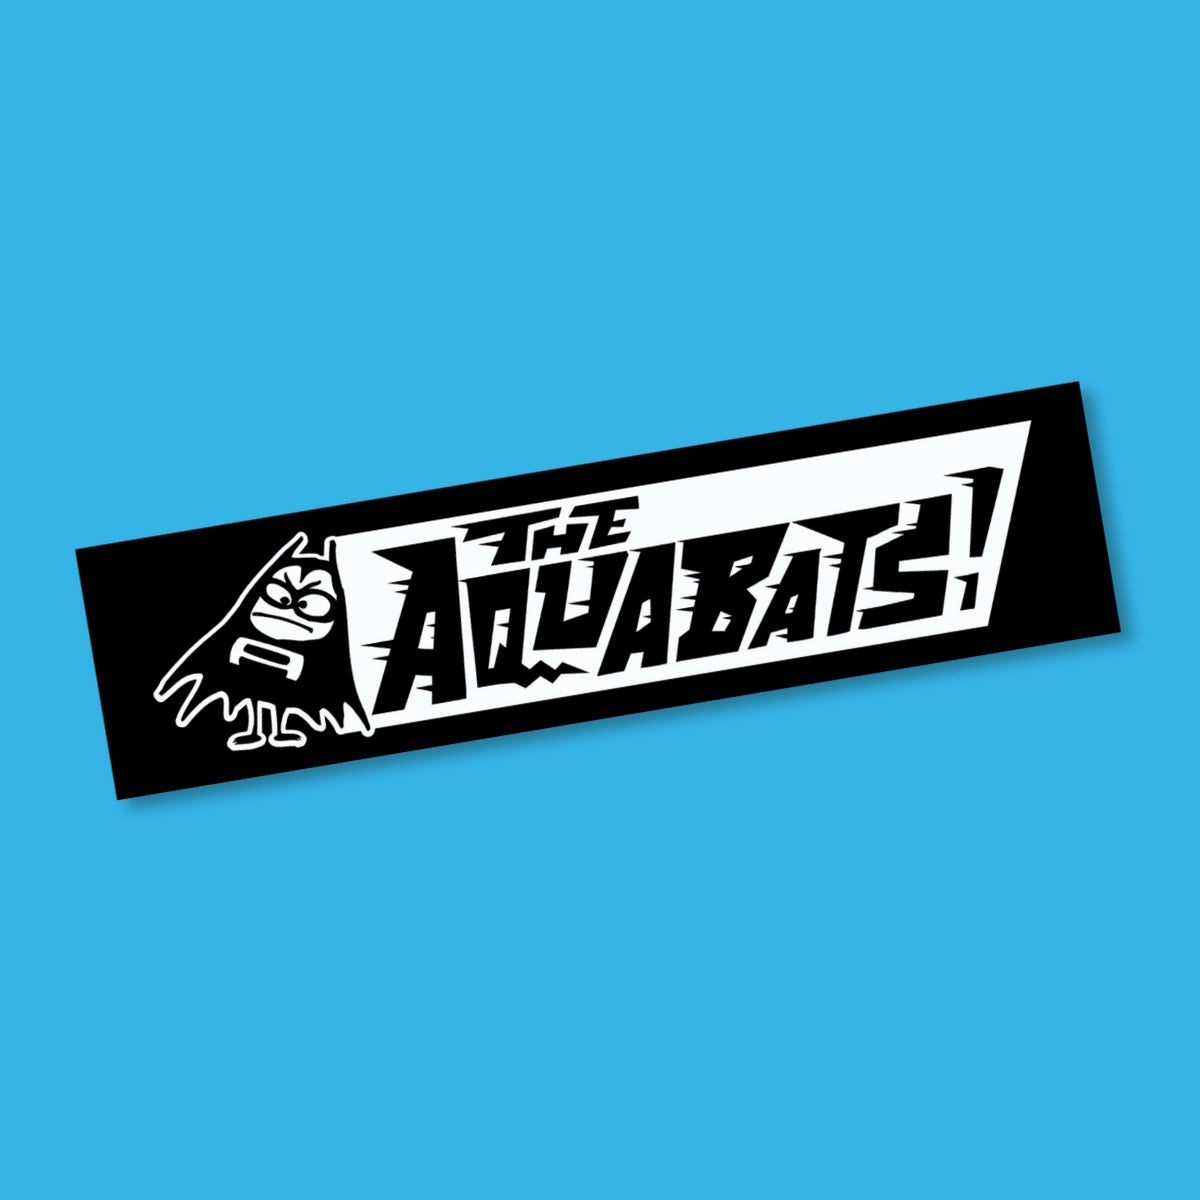 The Aquabats! Classic Logo Decal!